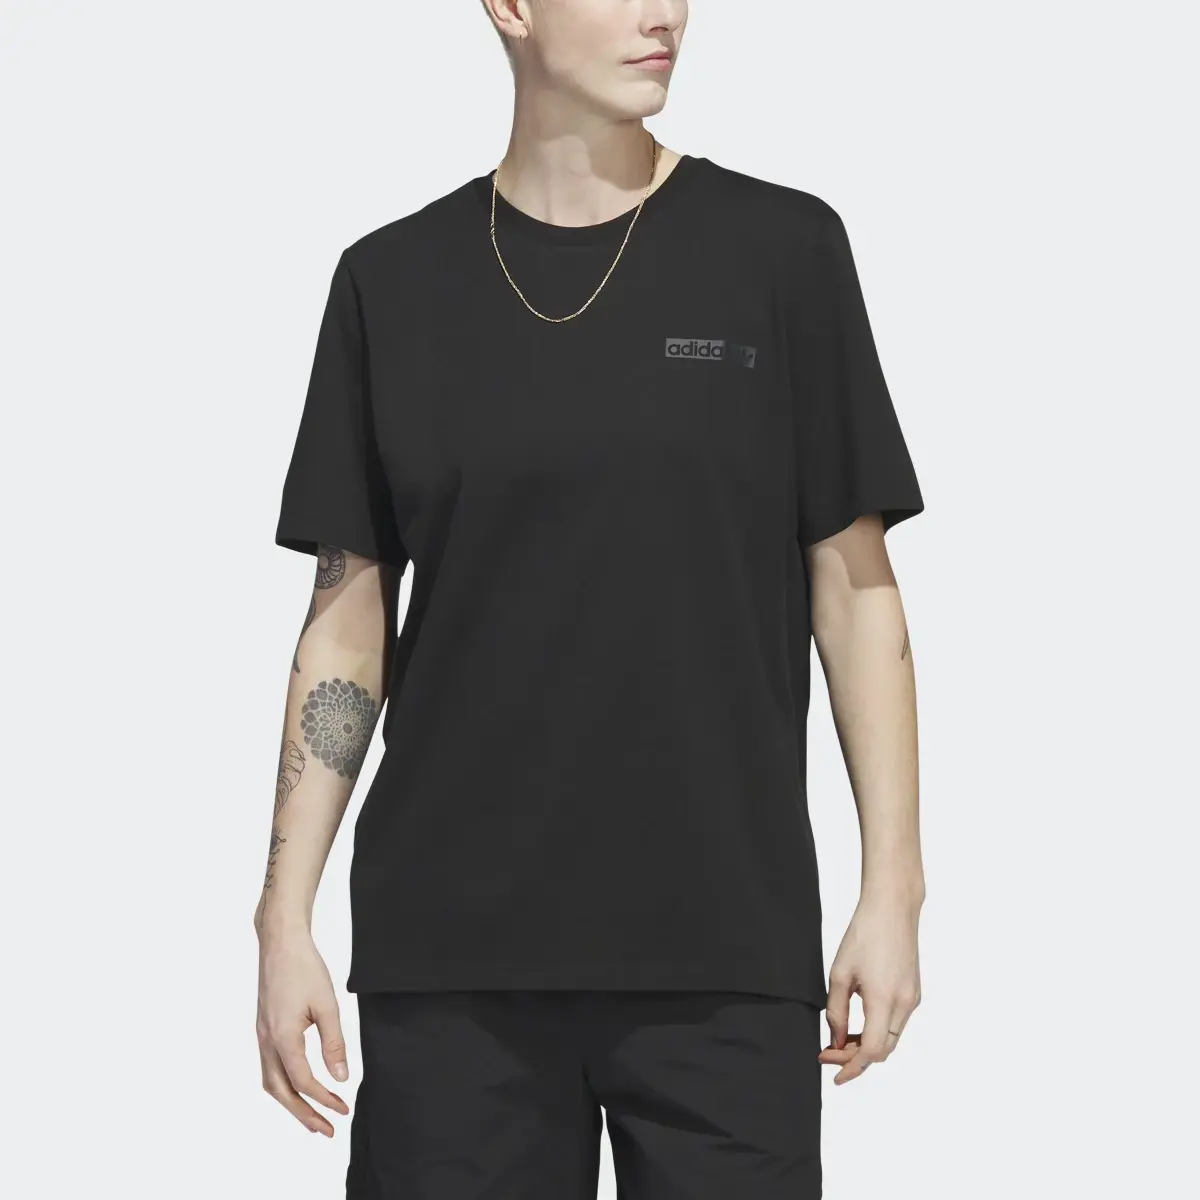 Adidas 4.0 Circle T-Shirt. 1